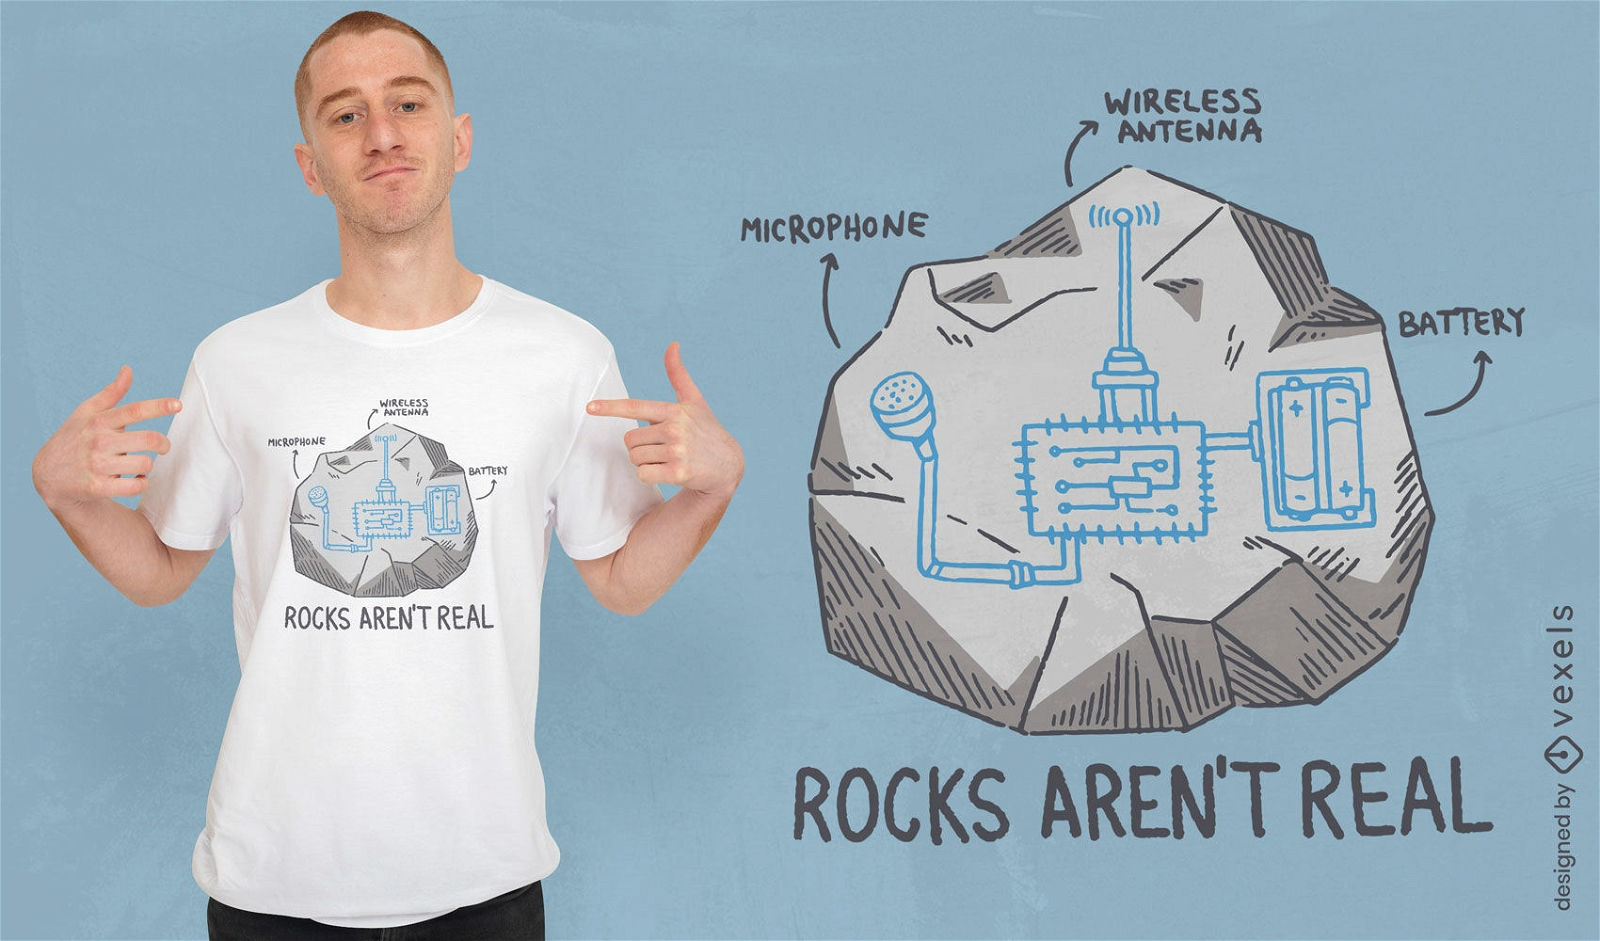 Rocks aren't real t-shirt design